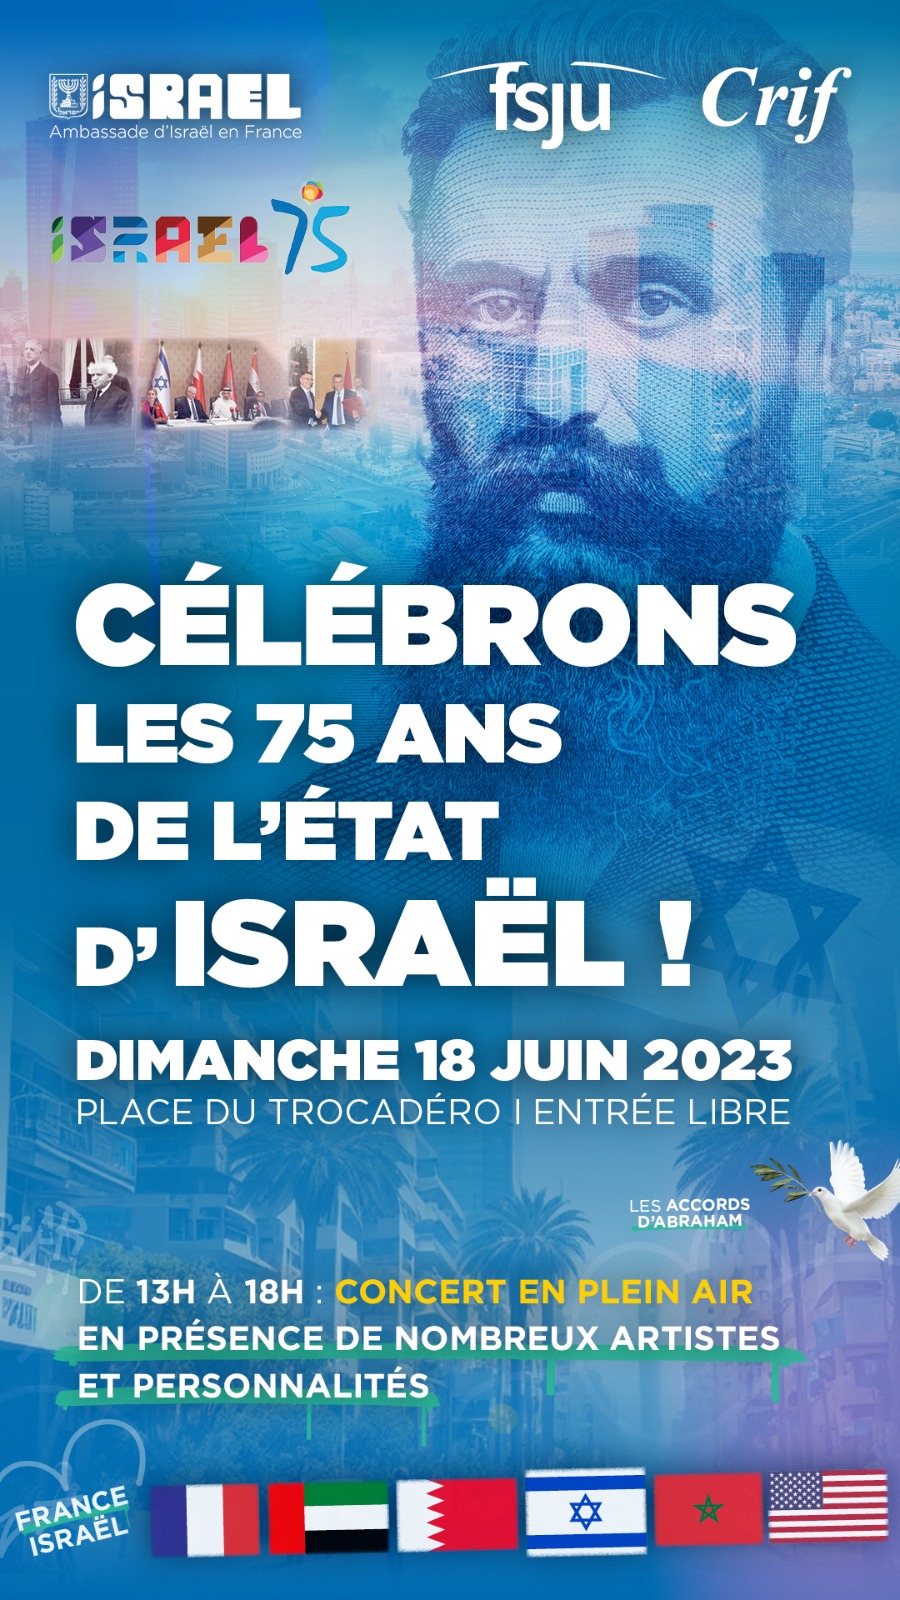 Le FSJU, l’Ambassade d’Israël et le CRIF célèbrent les 75 ans de l’État d’Israël !